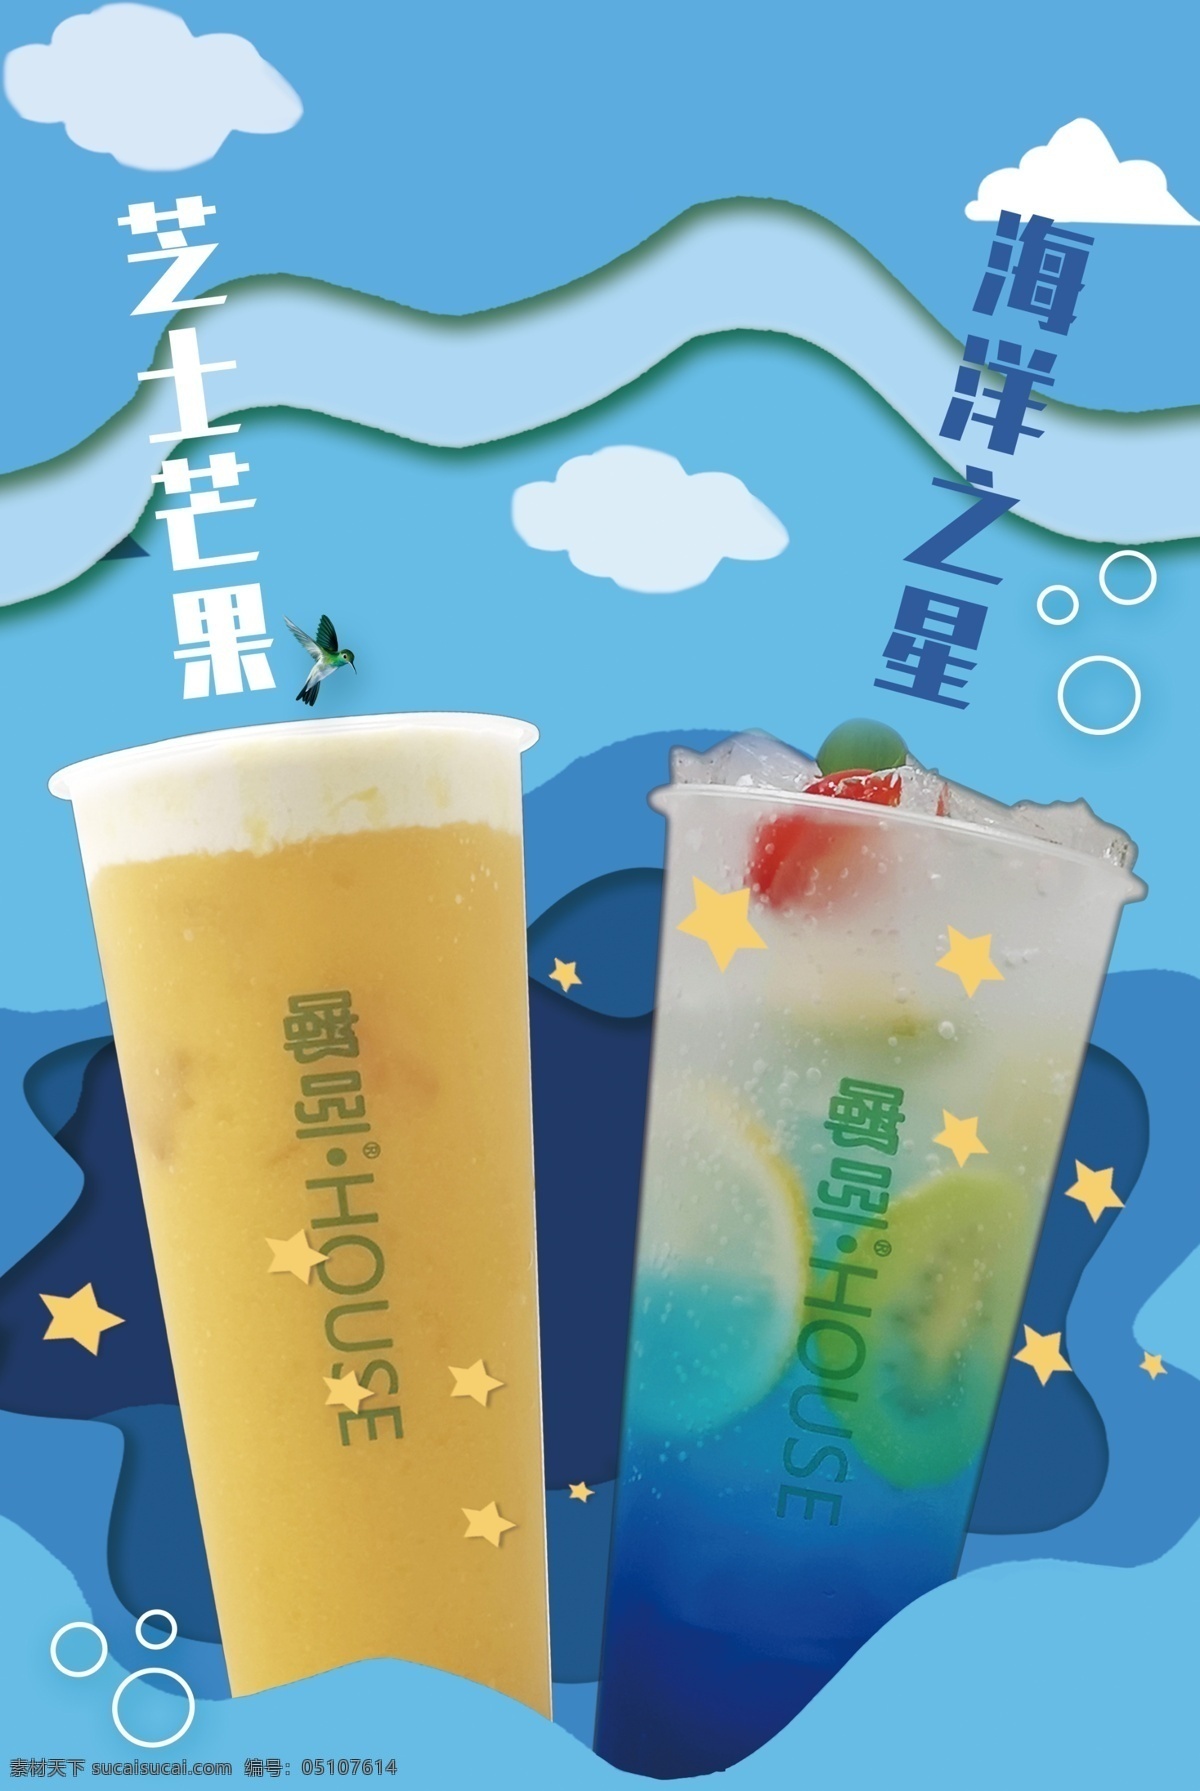 饮品海报 蓝色海报 饮料宣传单 奶茶宣传图 饮品产品图 海洋之星